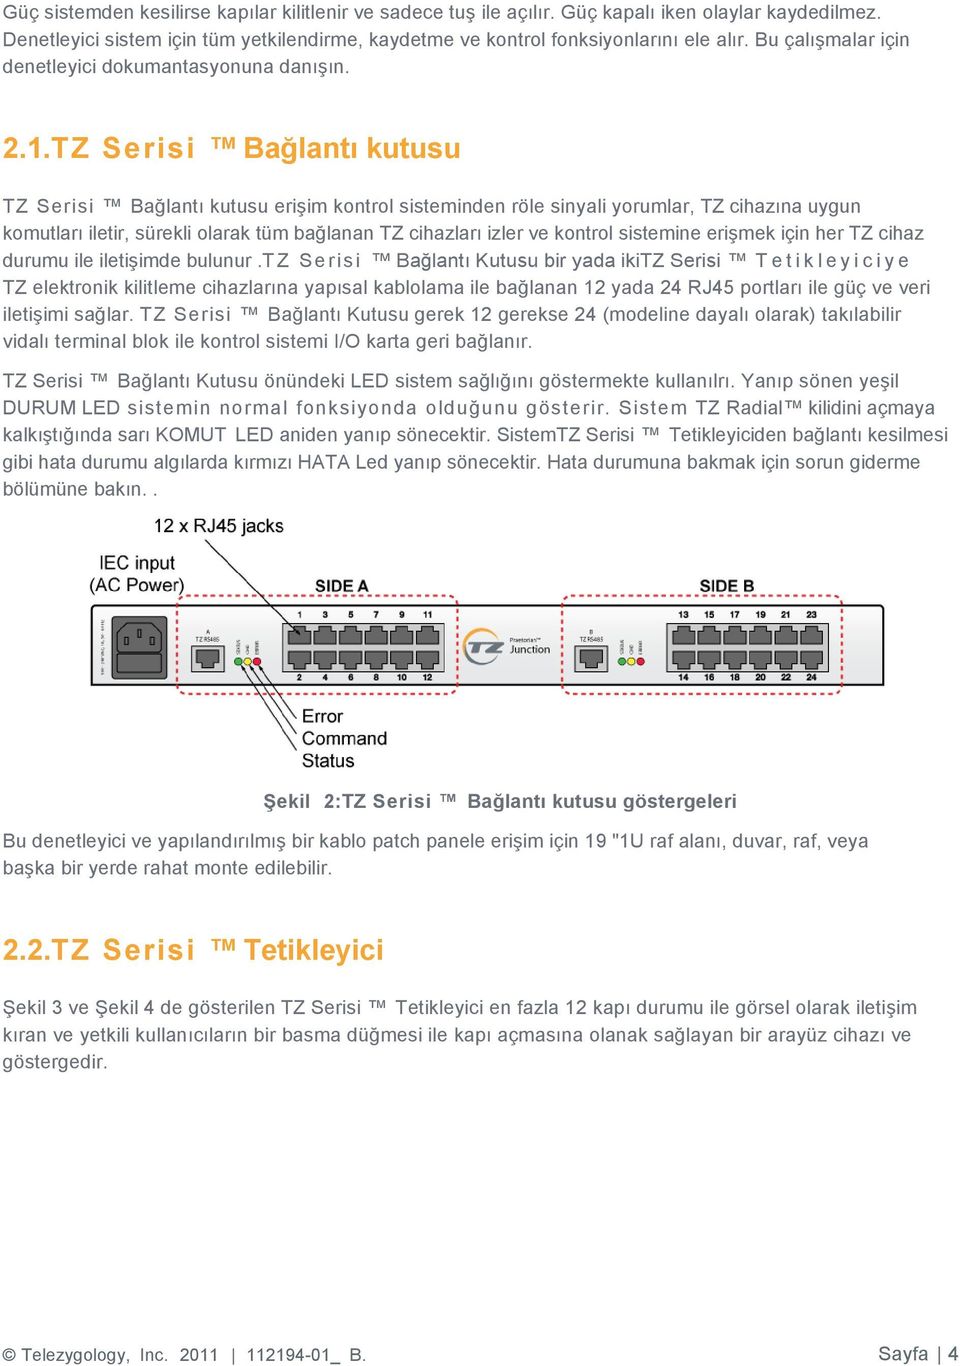 TZ Serisi Bağlantı kutusu TZ Serisi Bağlantı kutusu erişim kontrol sisteminden röle sinyali yorumlar, TZ cihazına uygun komutları iletir, sürekli olarak tüm bağlanan TZ cihazları izler ve kontrol